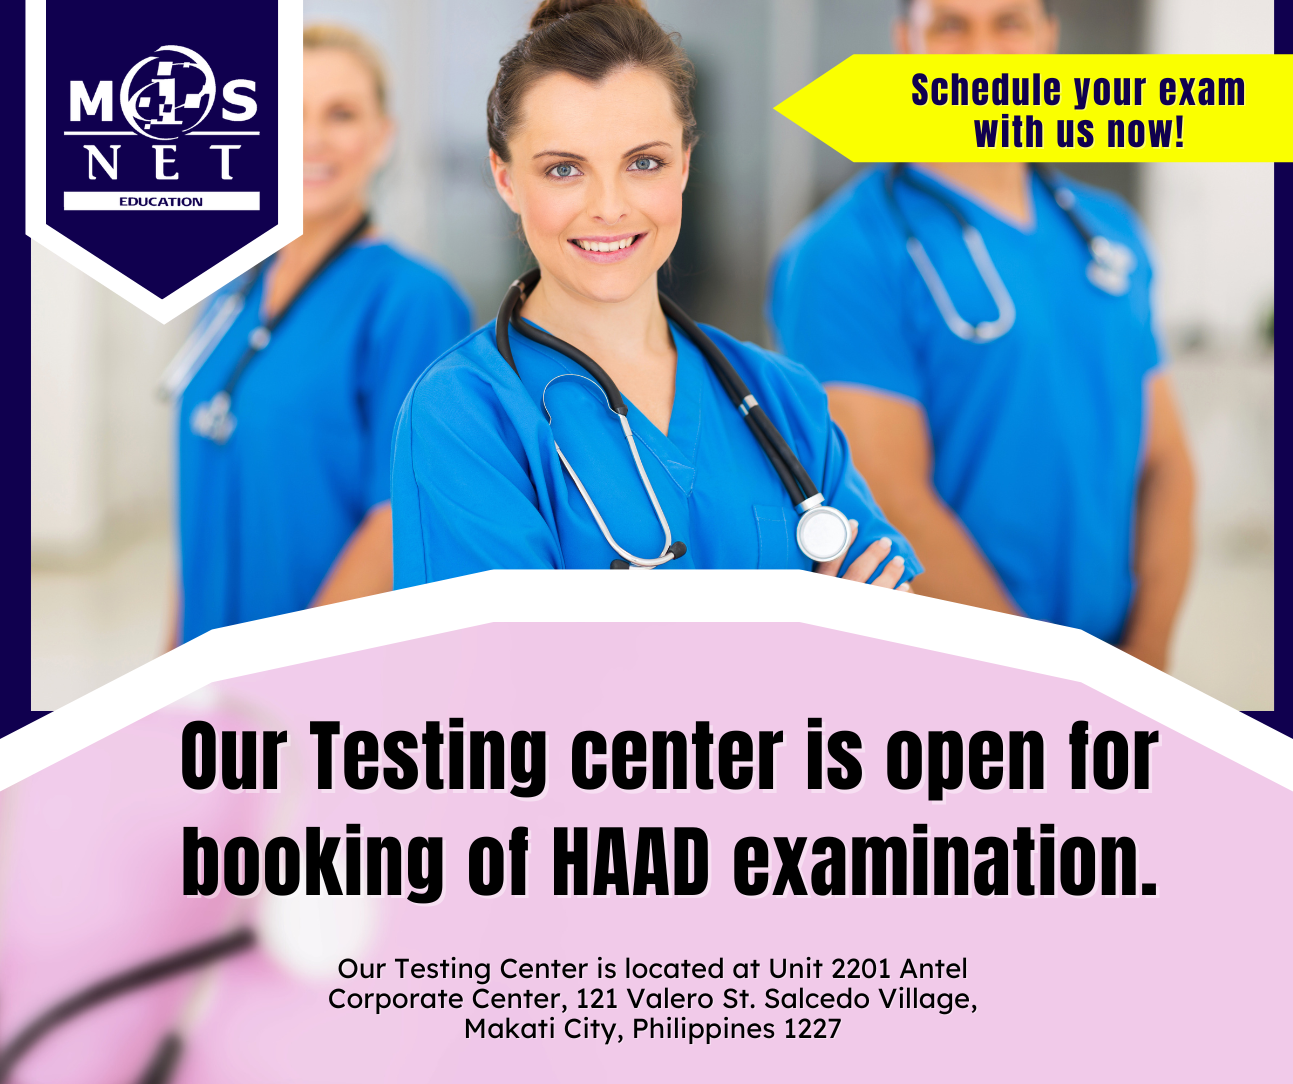 Book your HAAD Examination